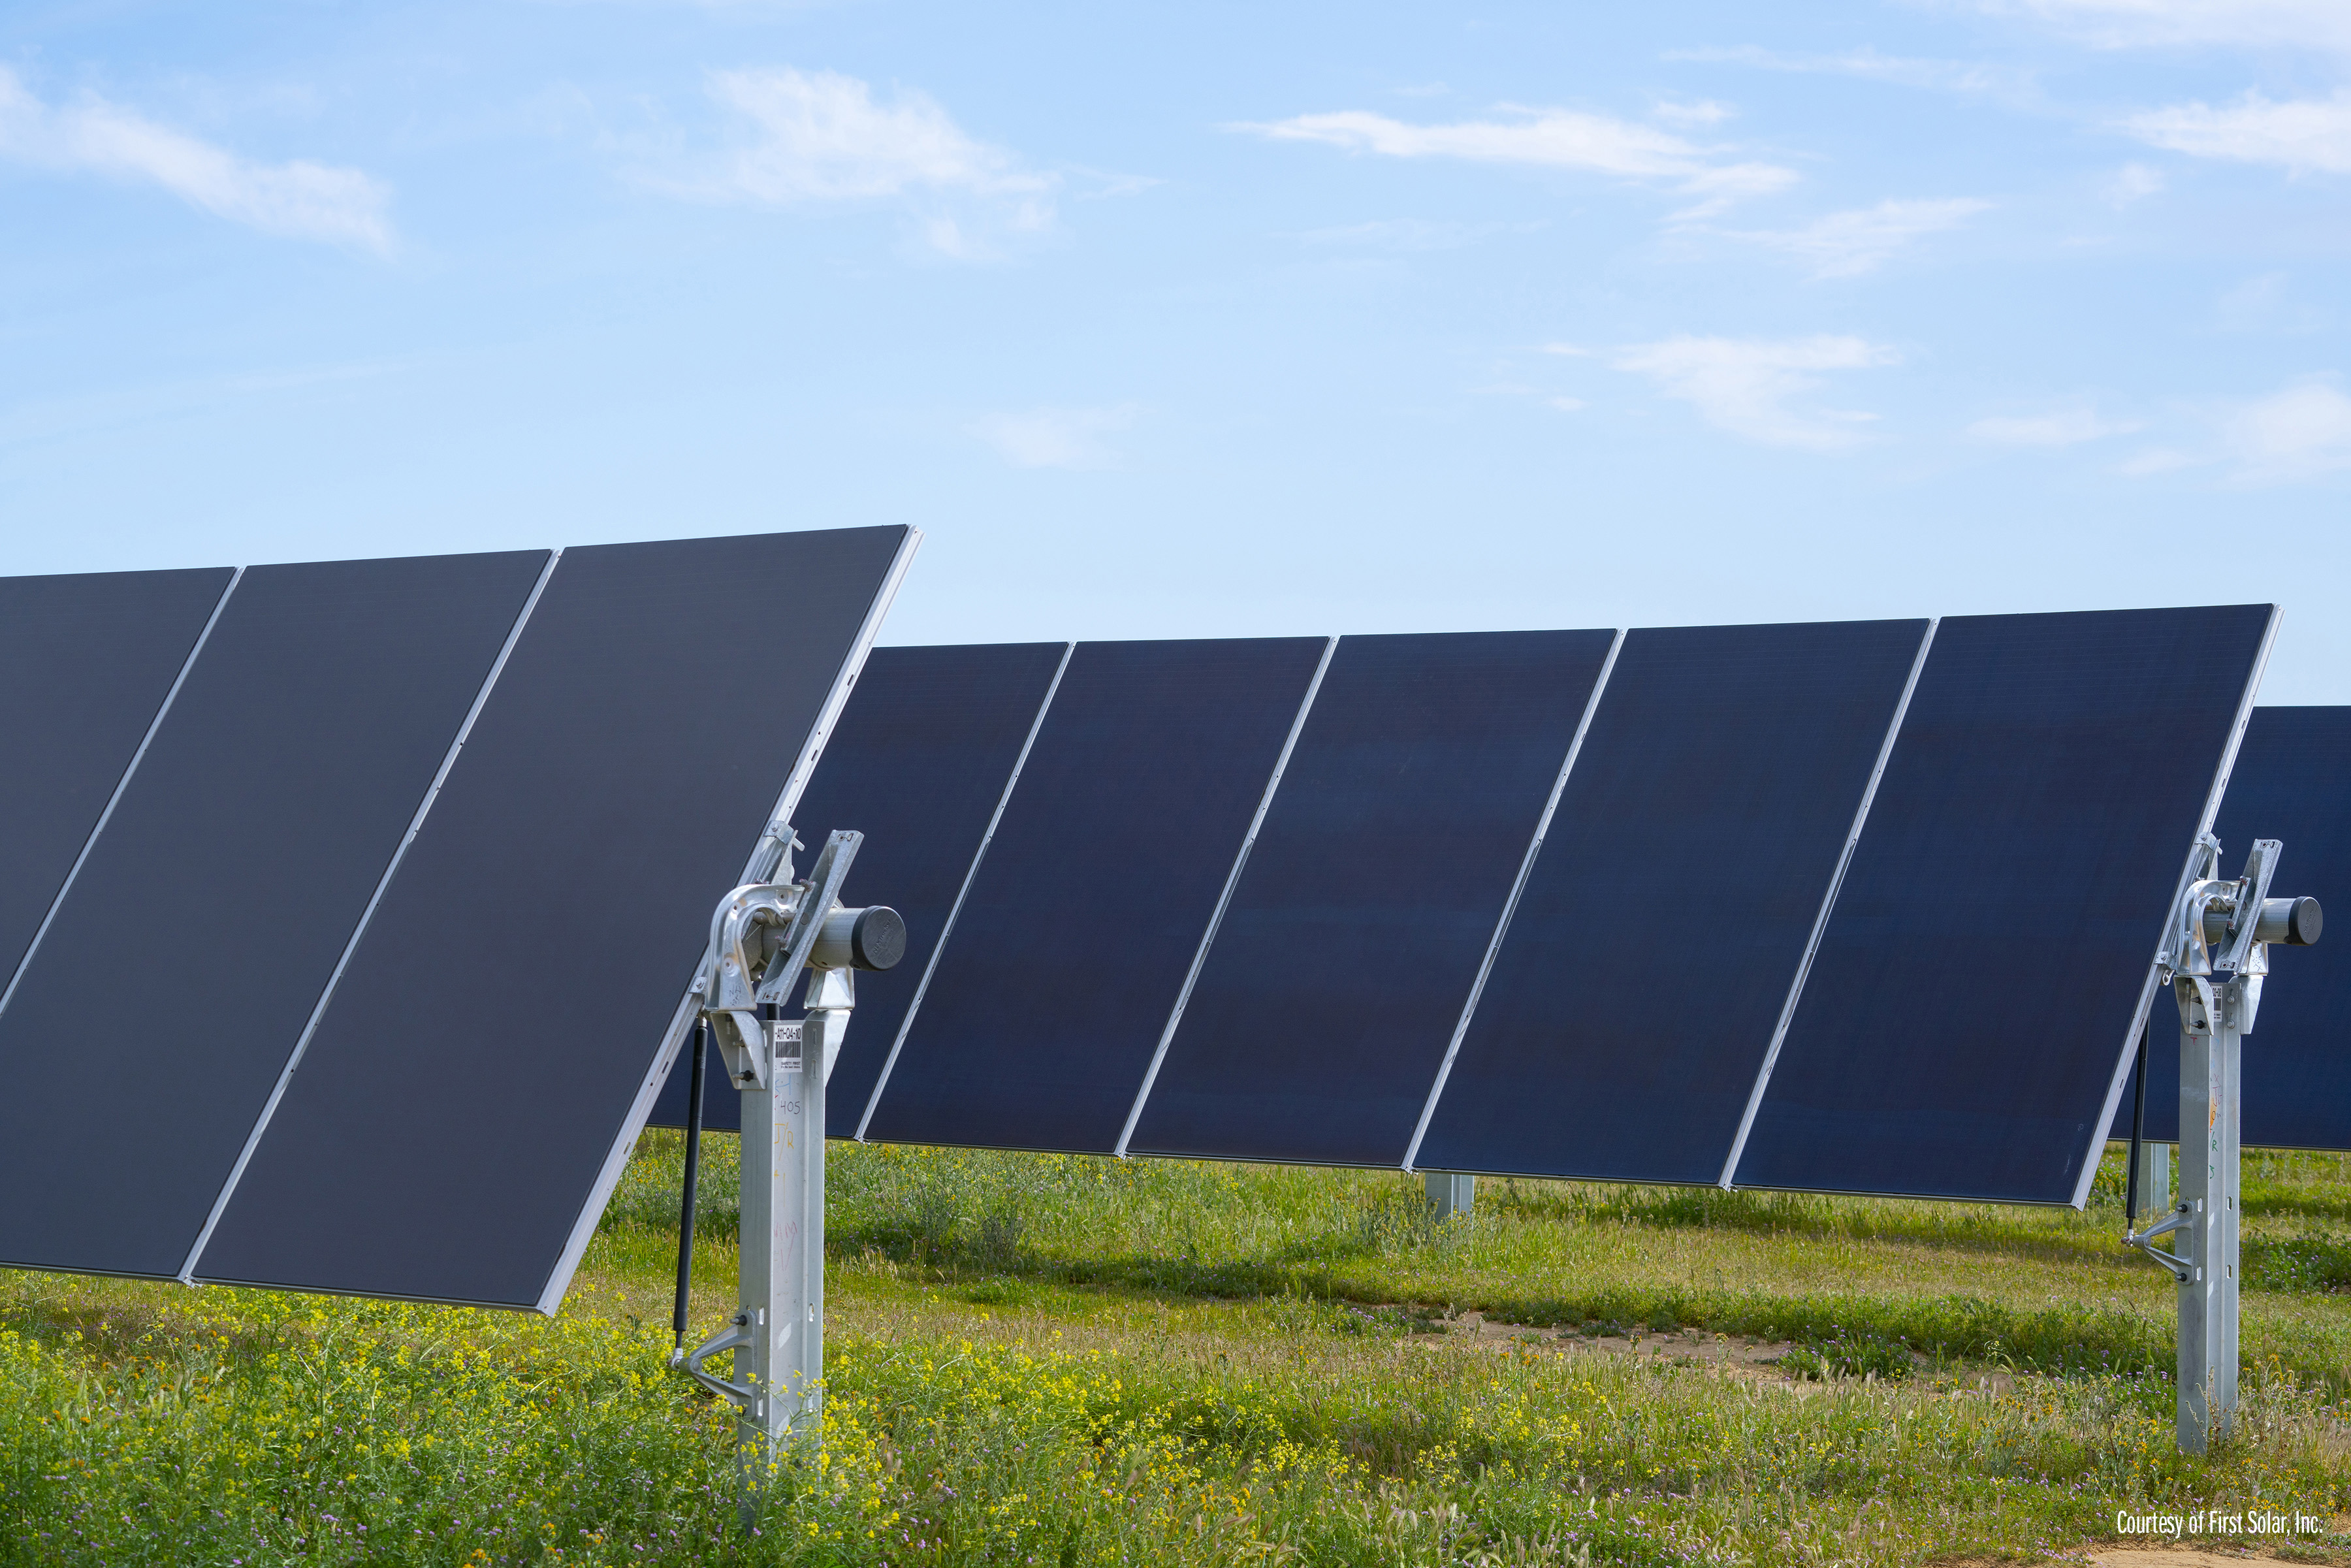 Compañía de paneles solares trae 1,500 puestos de trabajo a Mesquite